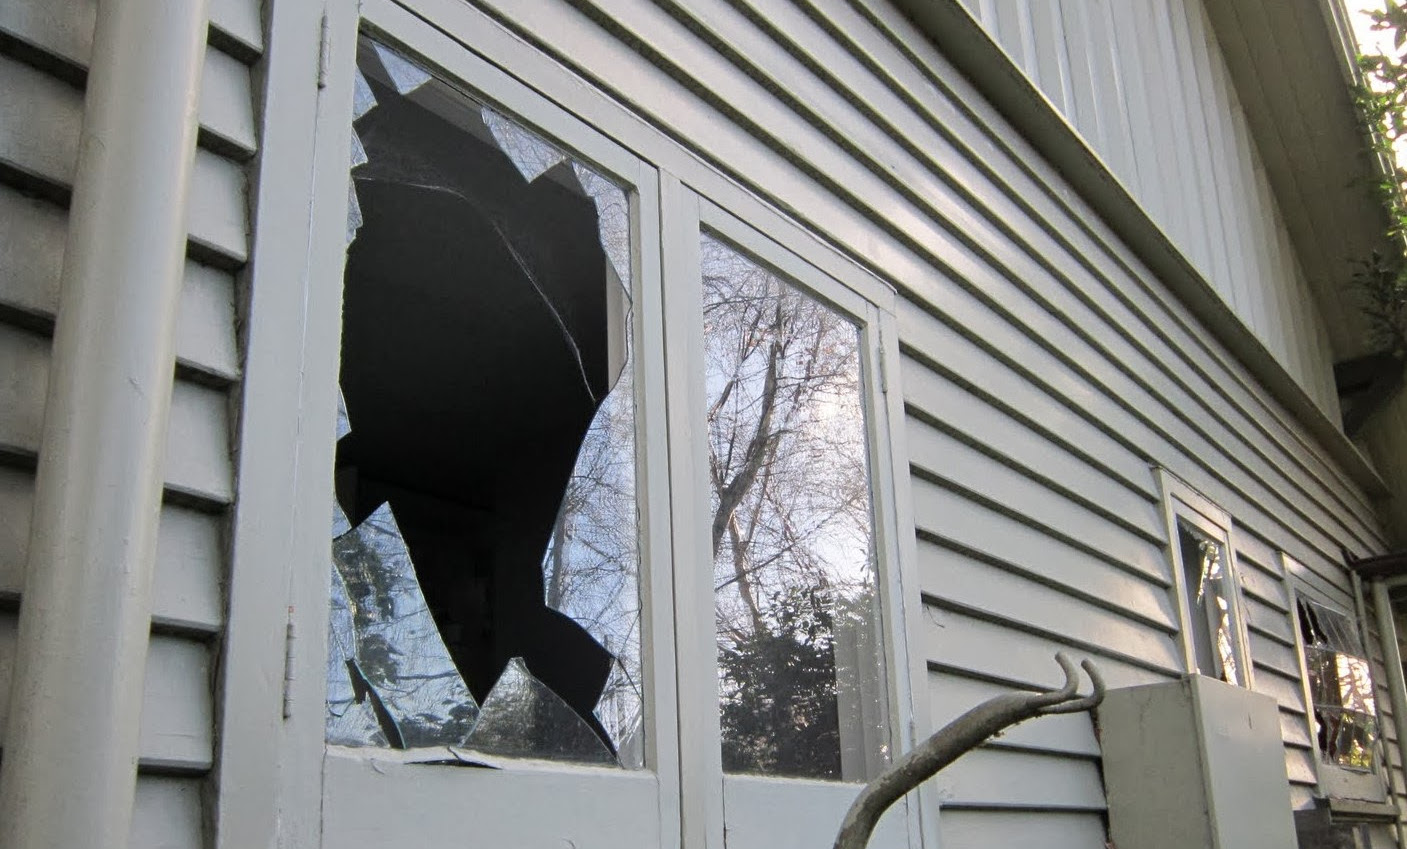 ΛΑΡΝΑΚΑ: Με ηλεκτρονικές συσκευές και όπλο έφυγαν οι διαρρήκτες – Πέτυχαν είσοδο στην οικία σπάζοντας το τζάμι